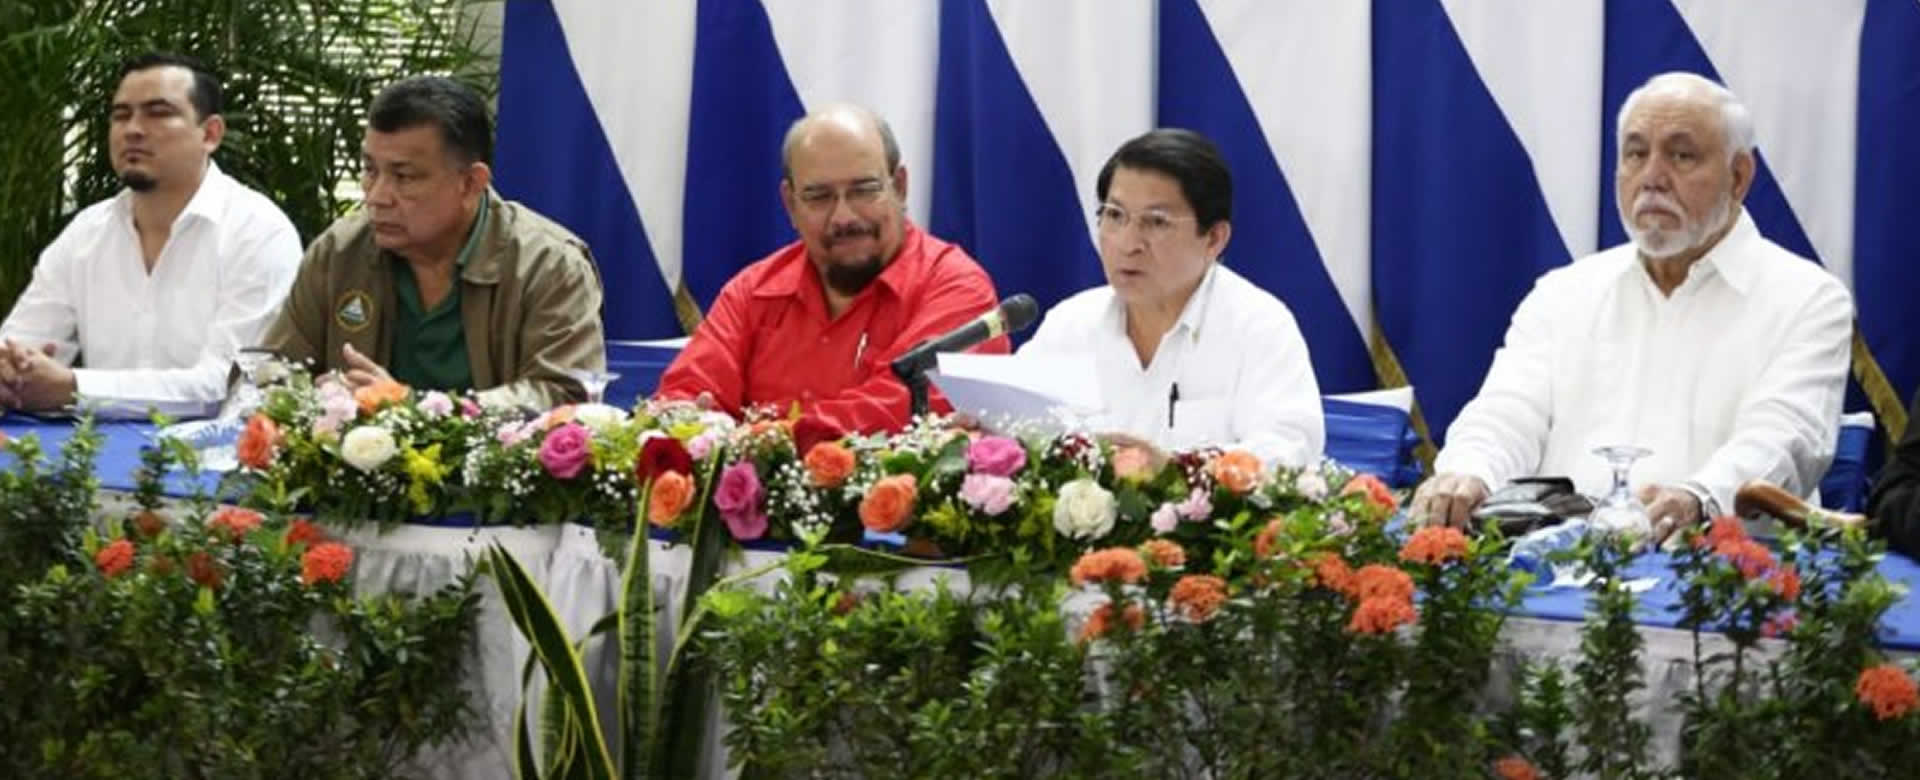 GRUN sigue trabajando en el fortaleciendo de la Democracia según la Constitución de Nicaragua